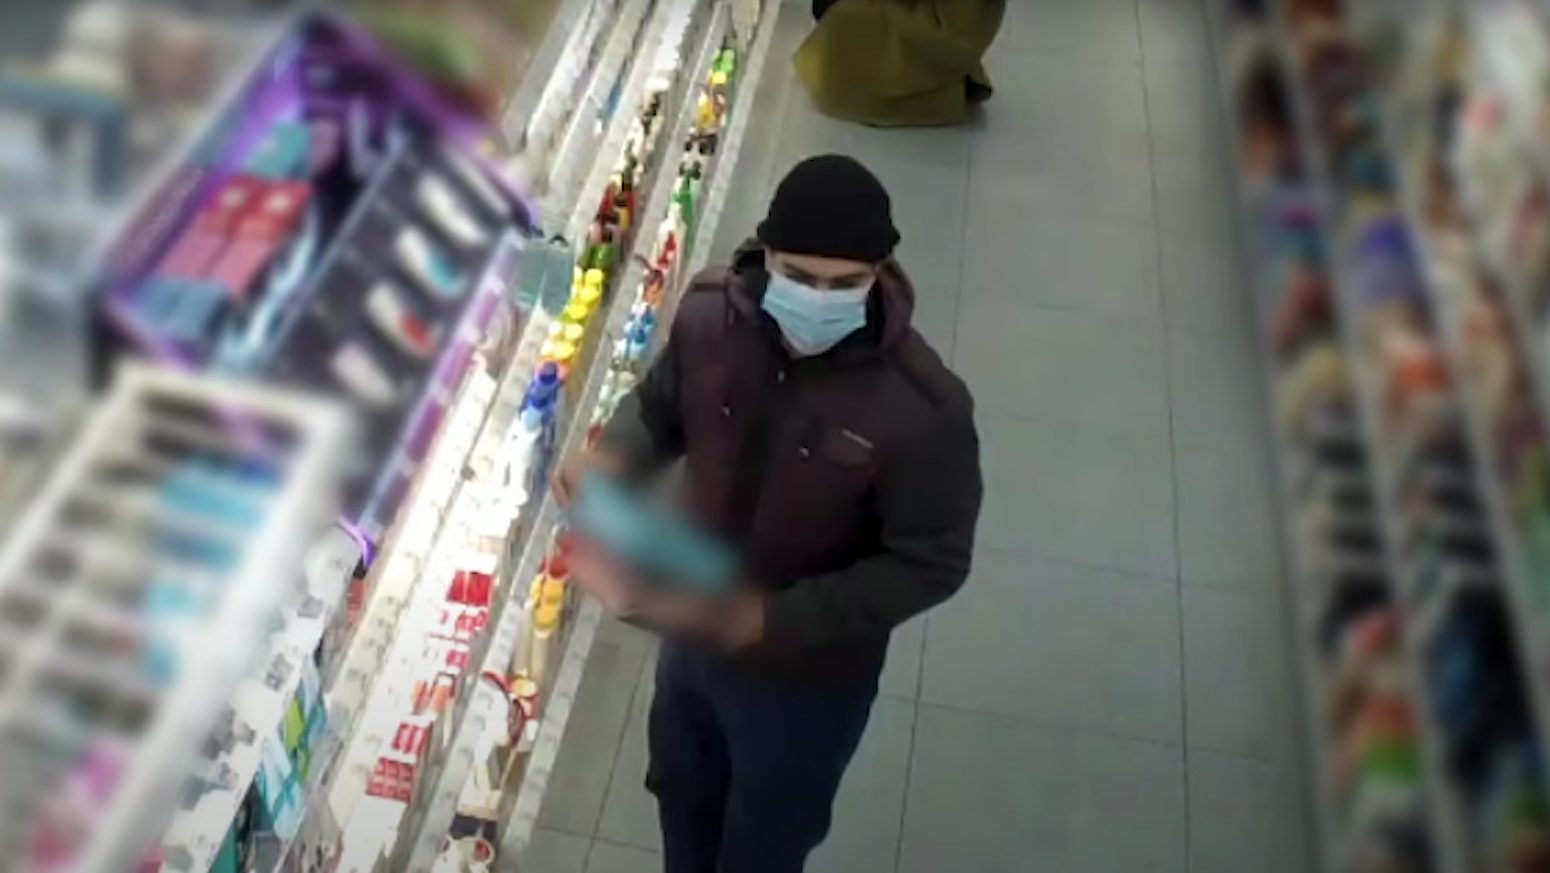 Videón, ahogy egy férfi leemeli az epilátorokat a polcról, majd lazán kisétál velük az üzletből